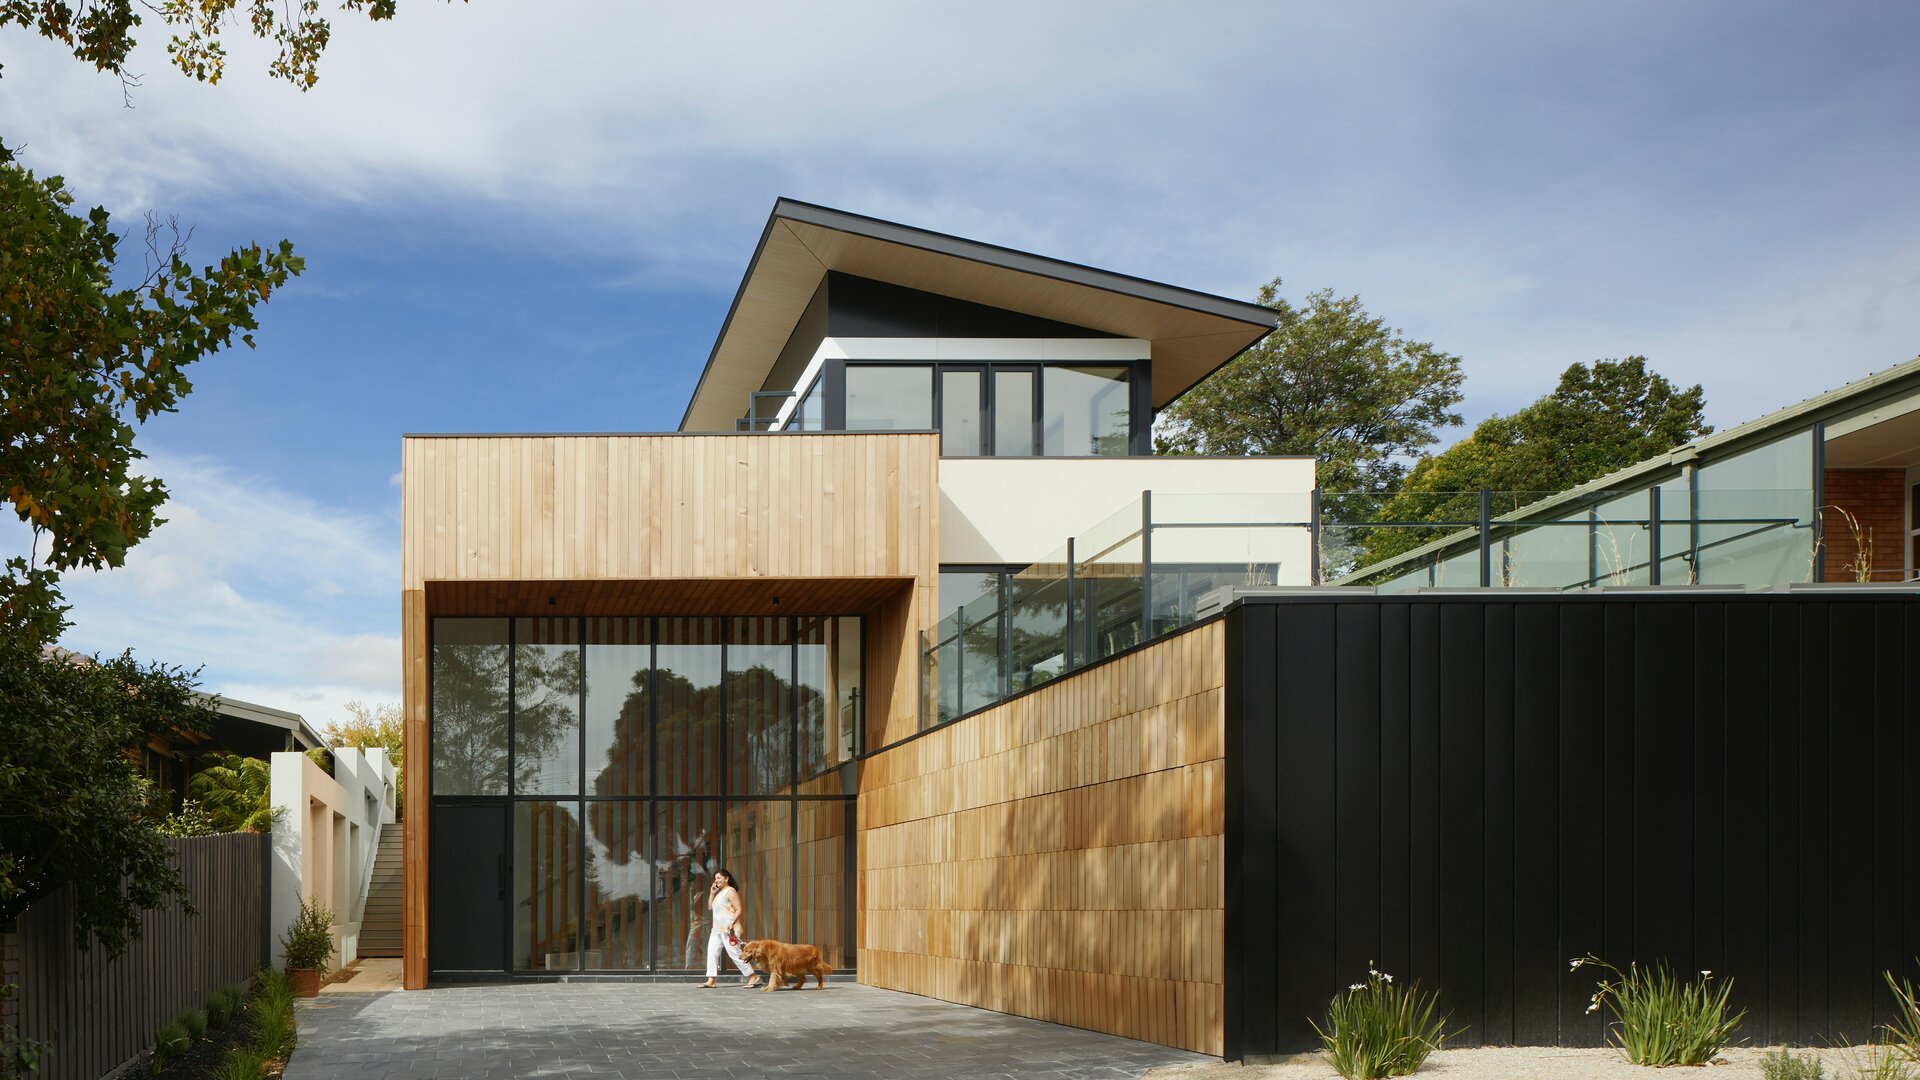 Vista esterna di una casa moderna con elementi costruttivi di raccordo effetto legno chiaro e nero ed elementi in vetro.